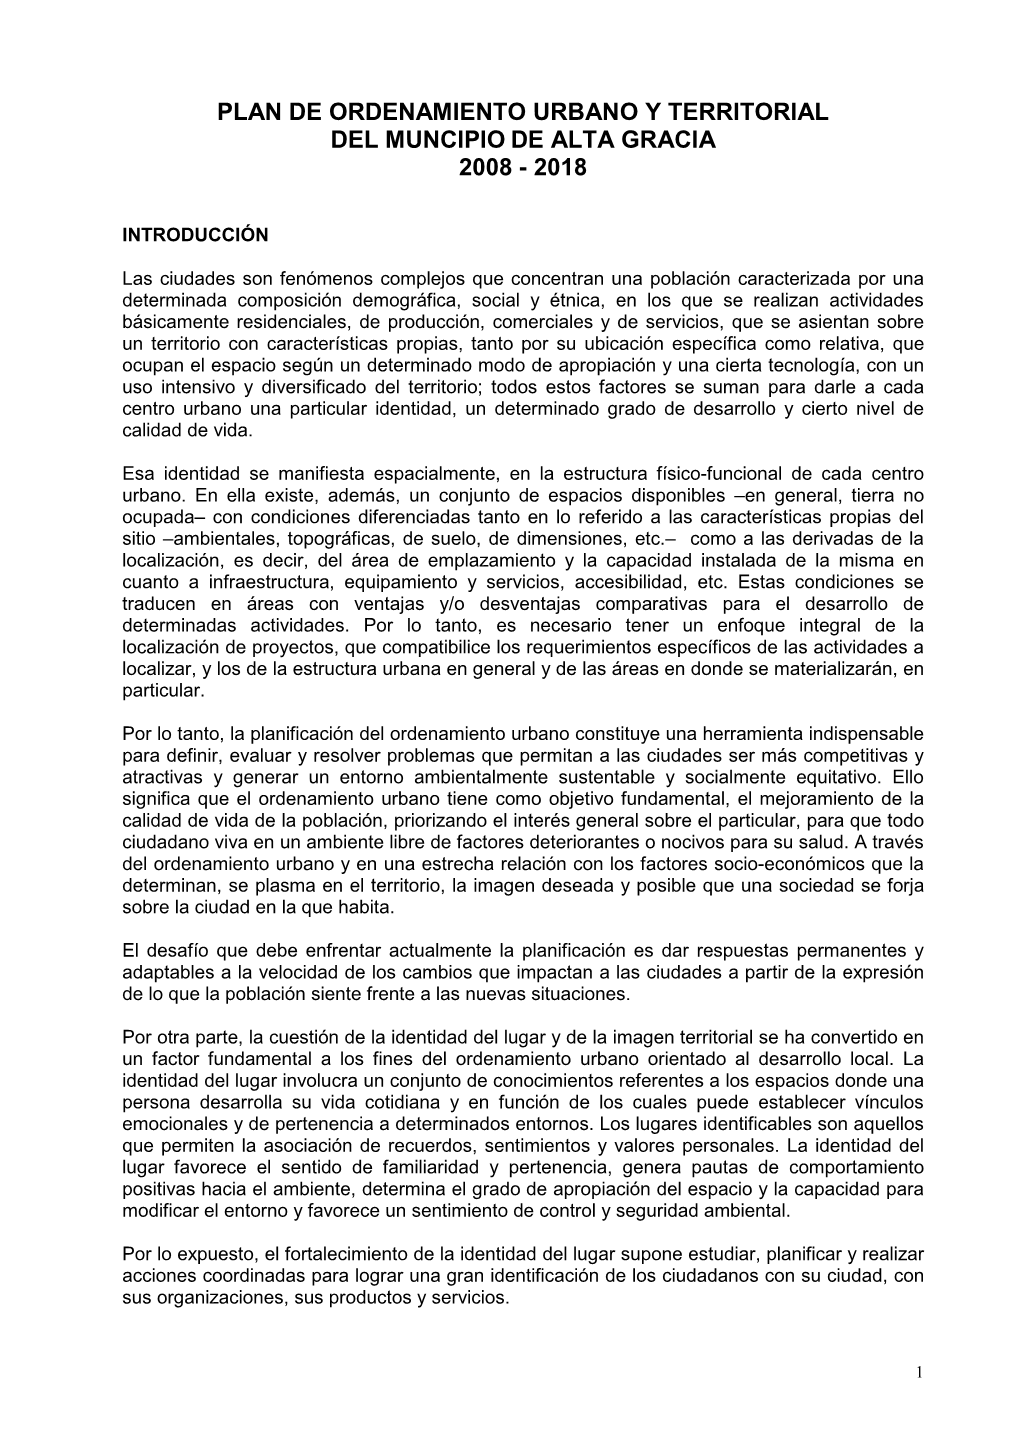 Plan De Ordenamiento Urbano Y Territorial Del Muncipio De Alta Gracia 2008 - 2018